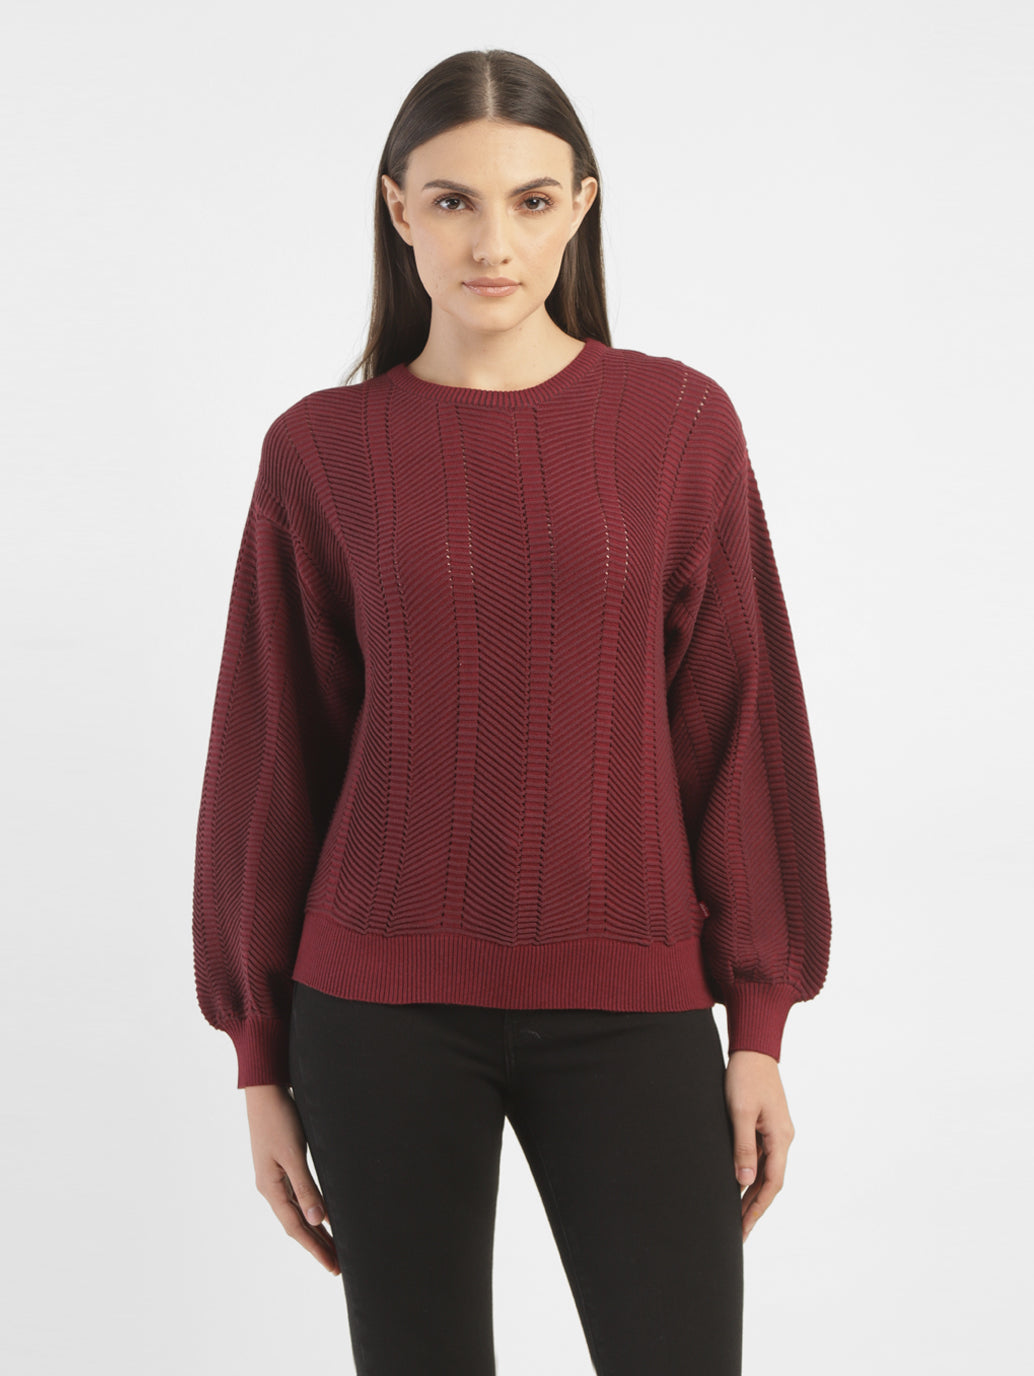 Women's Textured Maroon Crew Neck Sweater